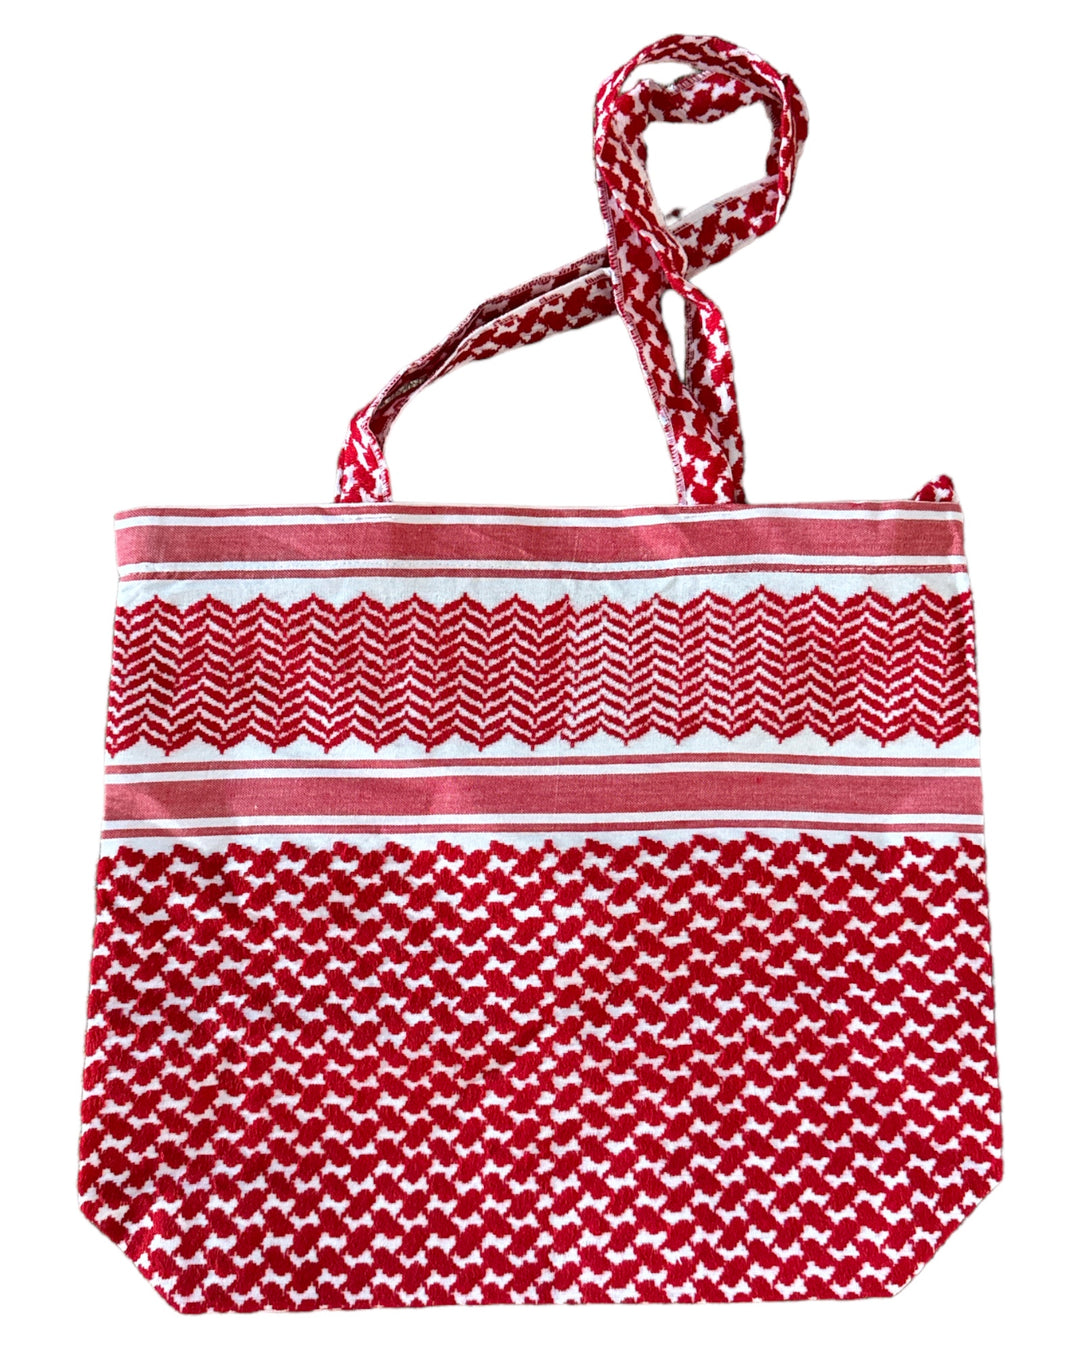 Le sac à main fourre-tout Keffiyeh rouge – Une tapisserie d’artisanat et d’héritage 